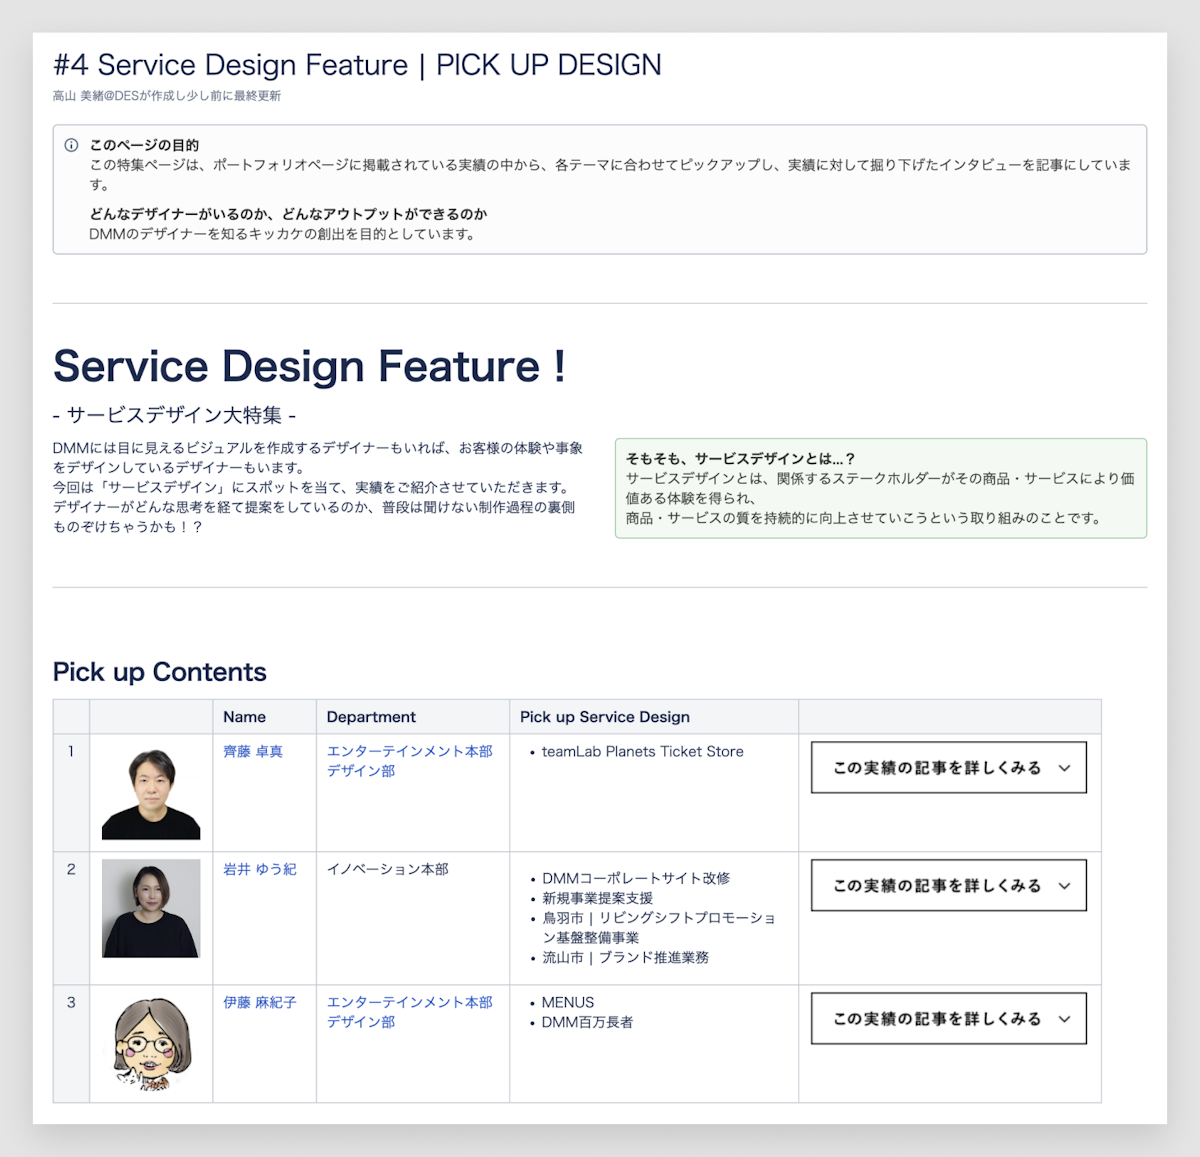 「#4 Service Design Feature | PICK UP DESIGN」のキャプチャ。サービスデザイン大特集と題し、ピックアップコンテンツが並んでいる。次のように書かれている。DMMには目に見えるビジュアルを作成するデザイナーもいれば、お客様の体験や事象をデザインしているデザイナーもいます。今回は「サービスデザイン」にスポットを当て、実績をご紹介させていただきます。デザイナーがどんな思考を経て提案しているのか、普段は聞けない制作過程の裏側ものぞけちゃうかも！？そもそもサービスデザインとは…？サービスデザインとは、関係するステークホルダーがその商品・サービスにより価値ある体験を得られ、商品・サービスの質を持続的に向上させていこうという取り組みのことです。